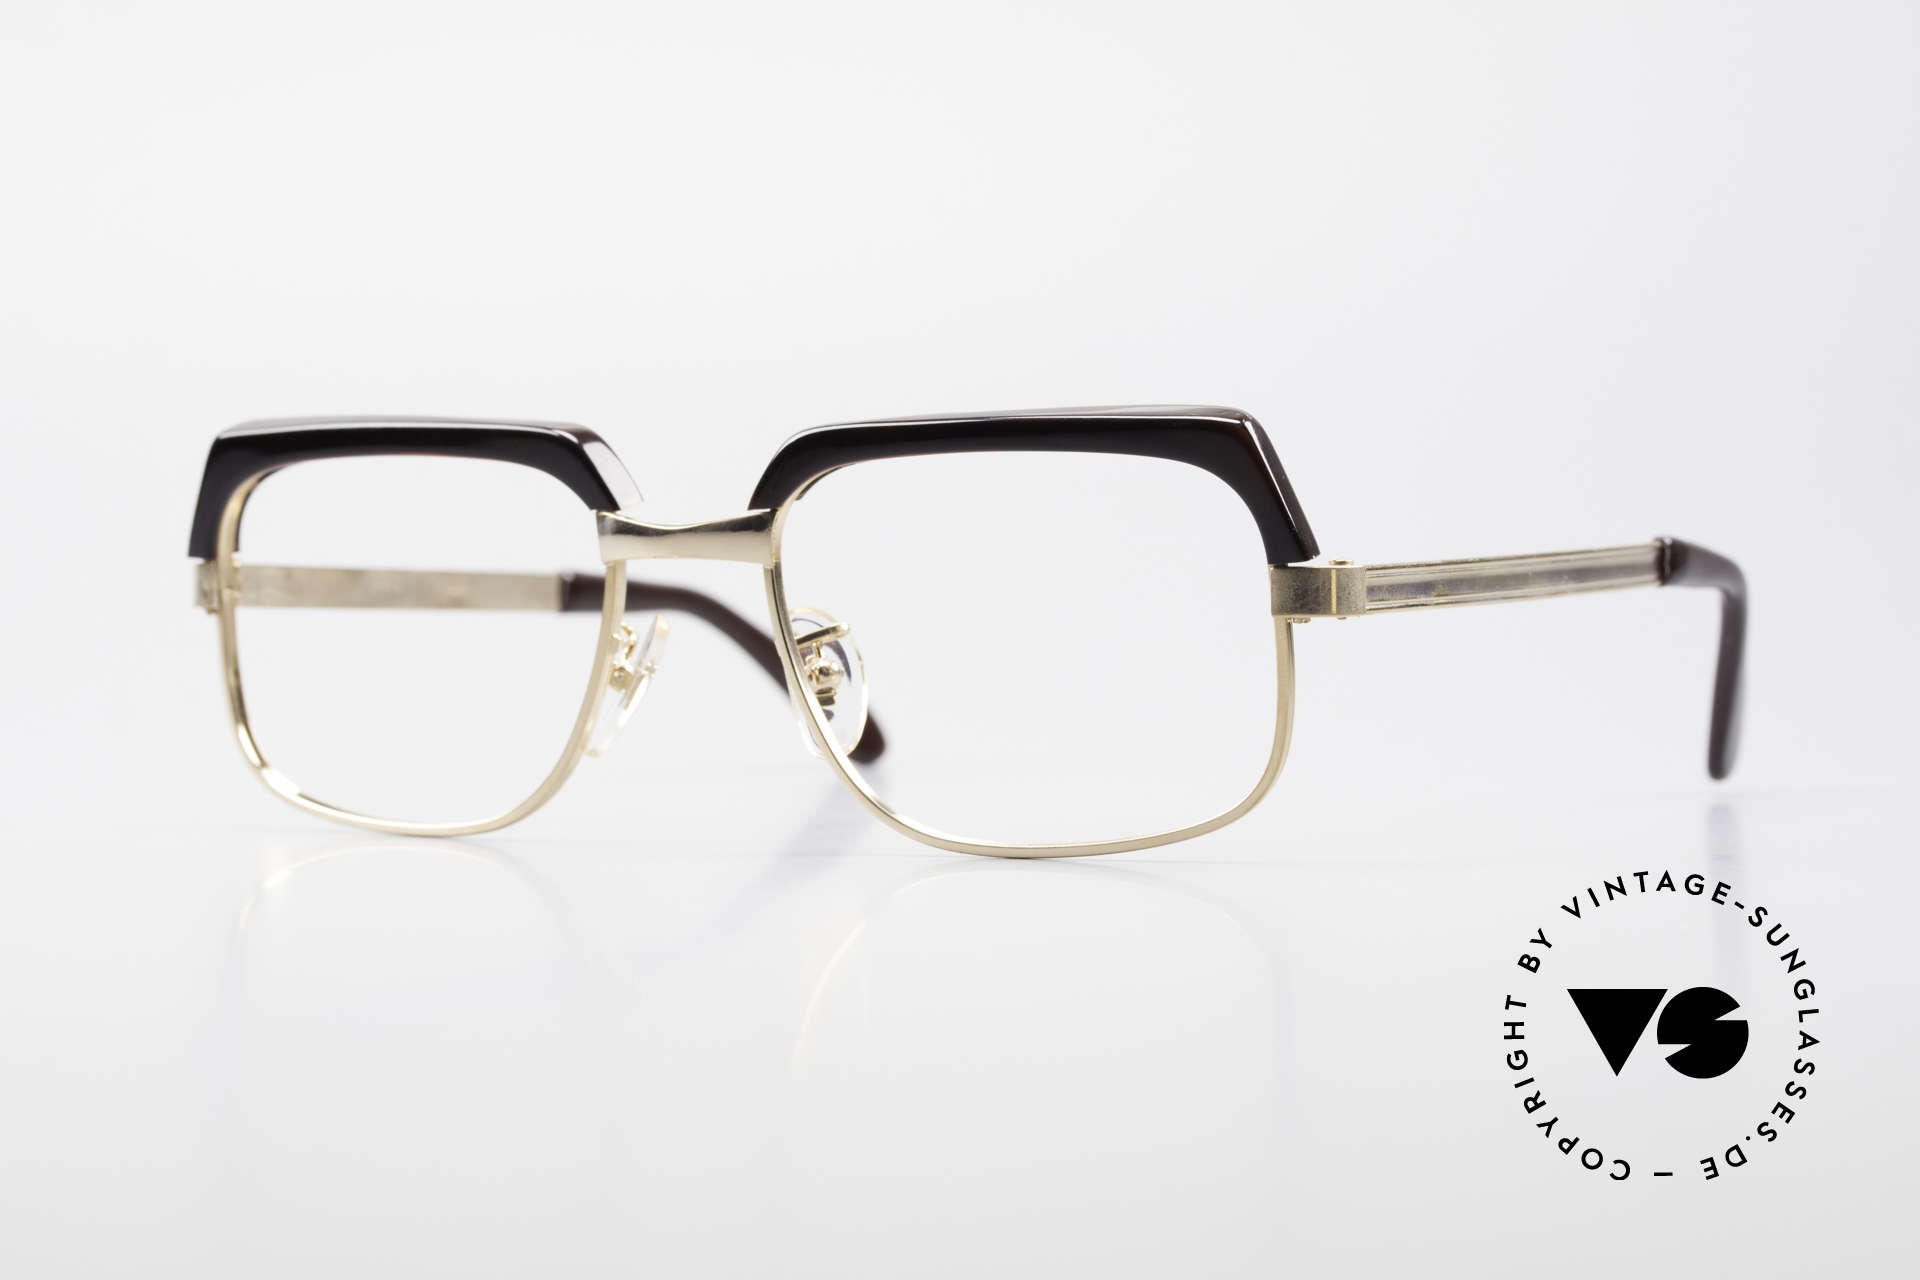 Selecta - Dalai Lama Gold Filled Kombibrille 70er, antike Kombi-Brille aus den frühen 70er Jahren; Original, Passend für Herren